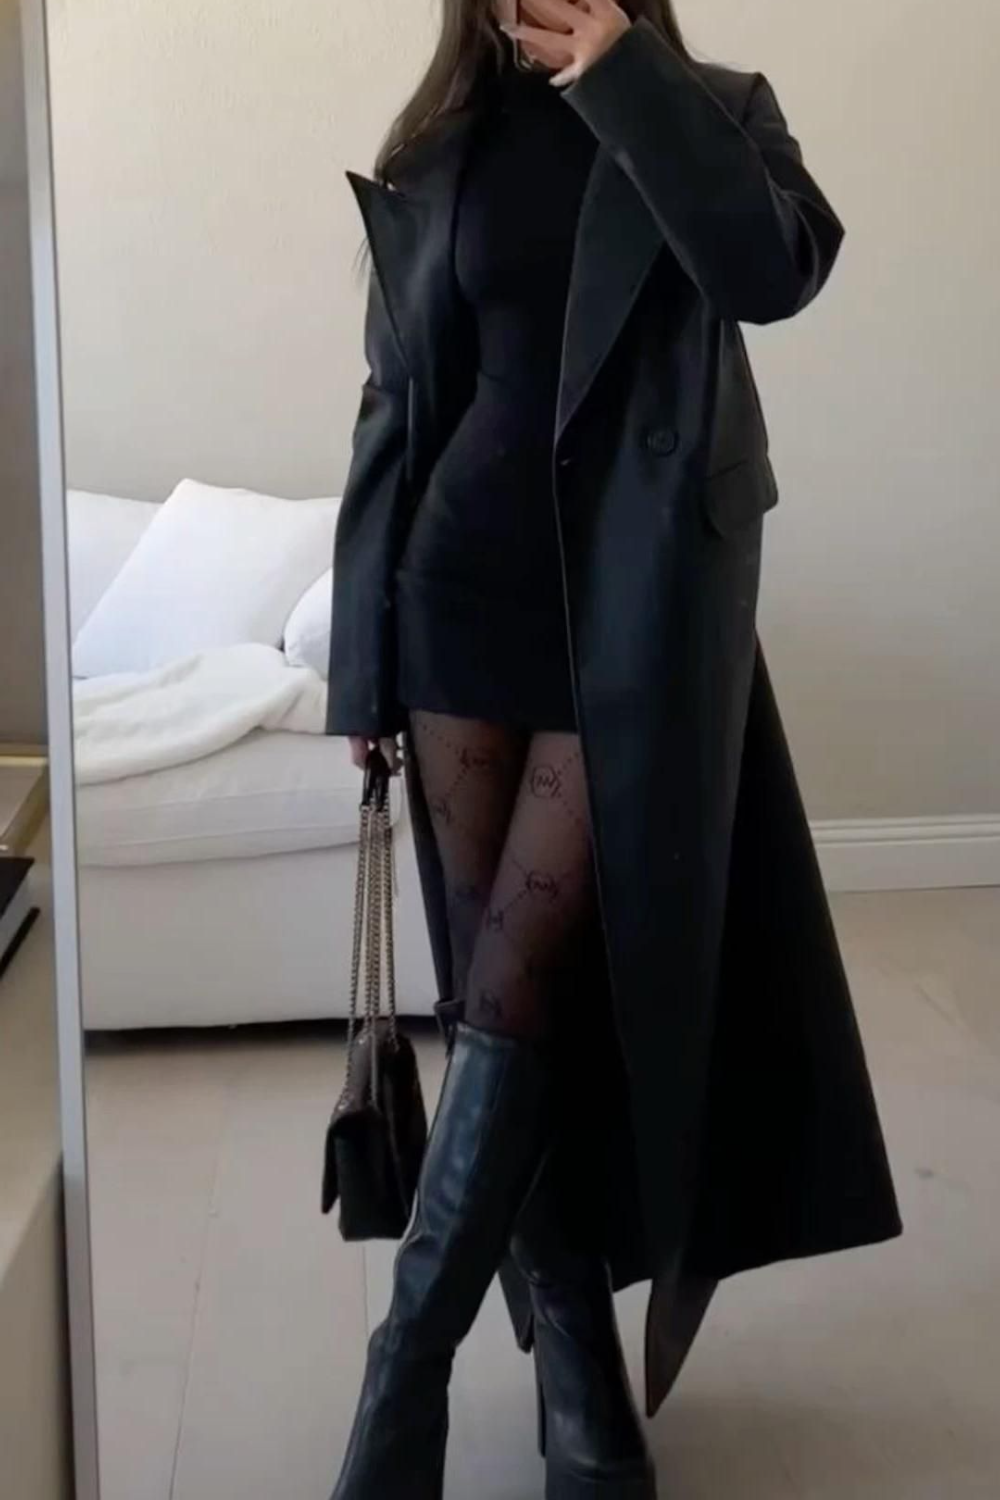 Why Every Wardrobe Needs a Long Black
Coat